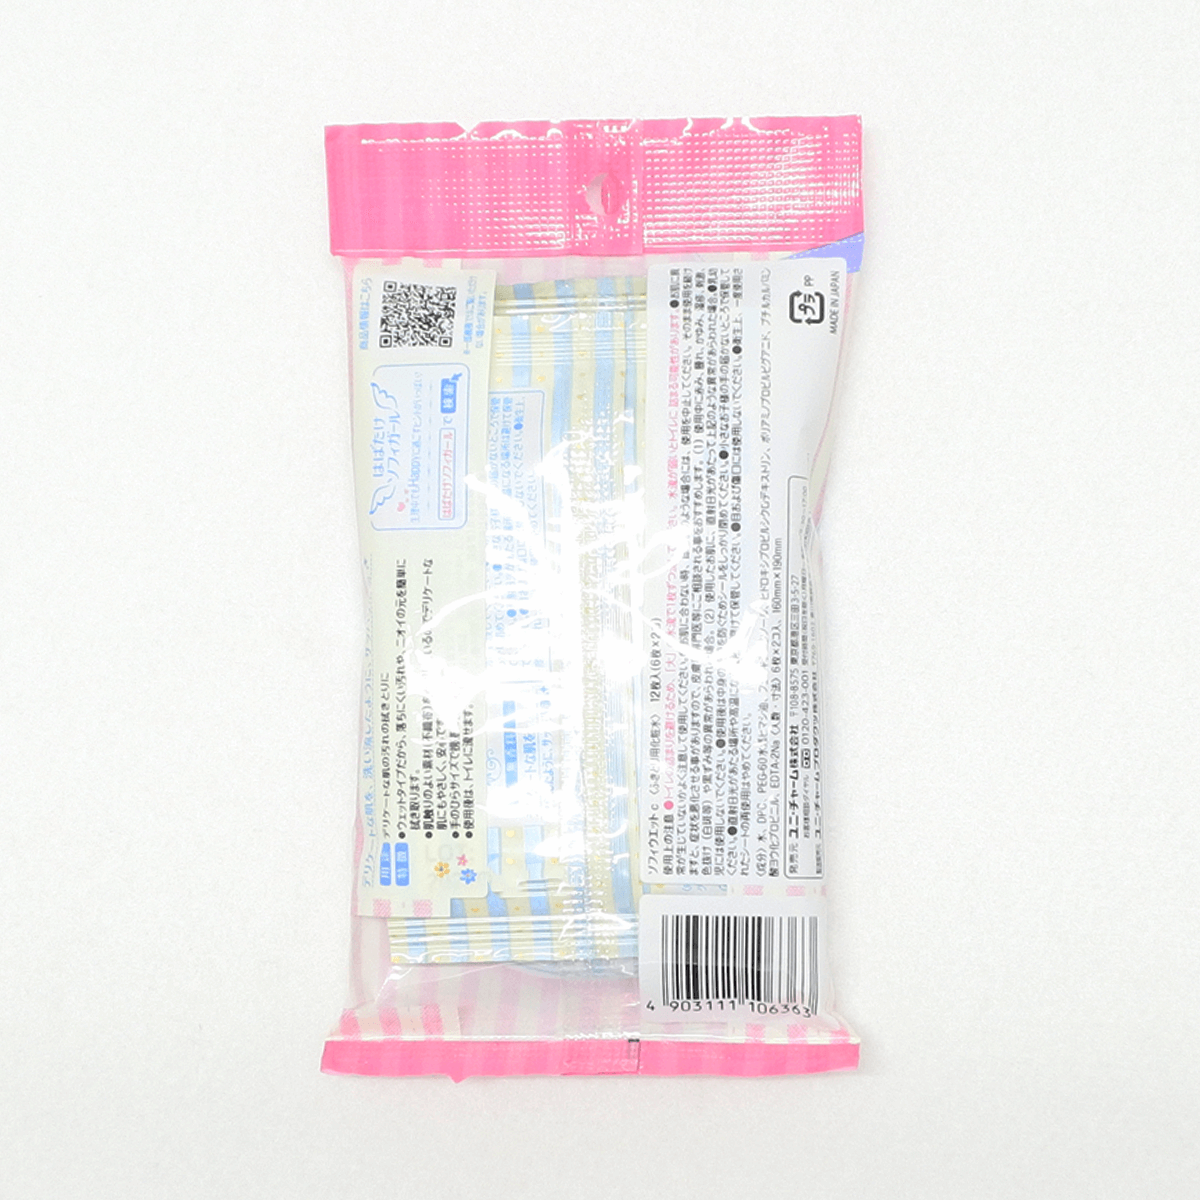 Sofy 苏菲 生理期洁净护理湿纸巾(无香)6抽×2包